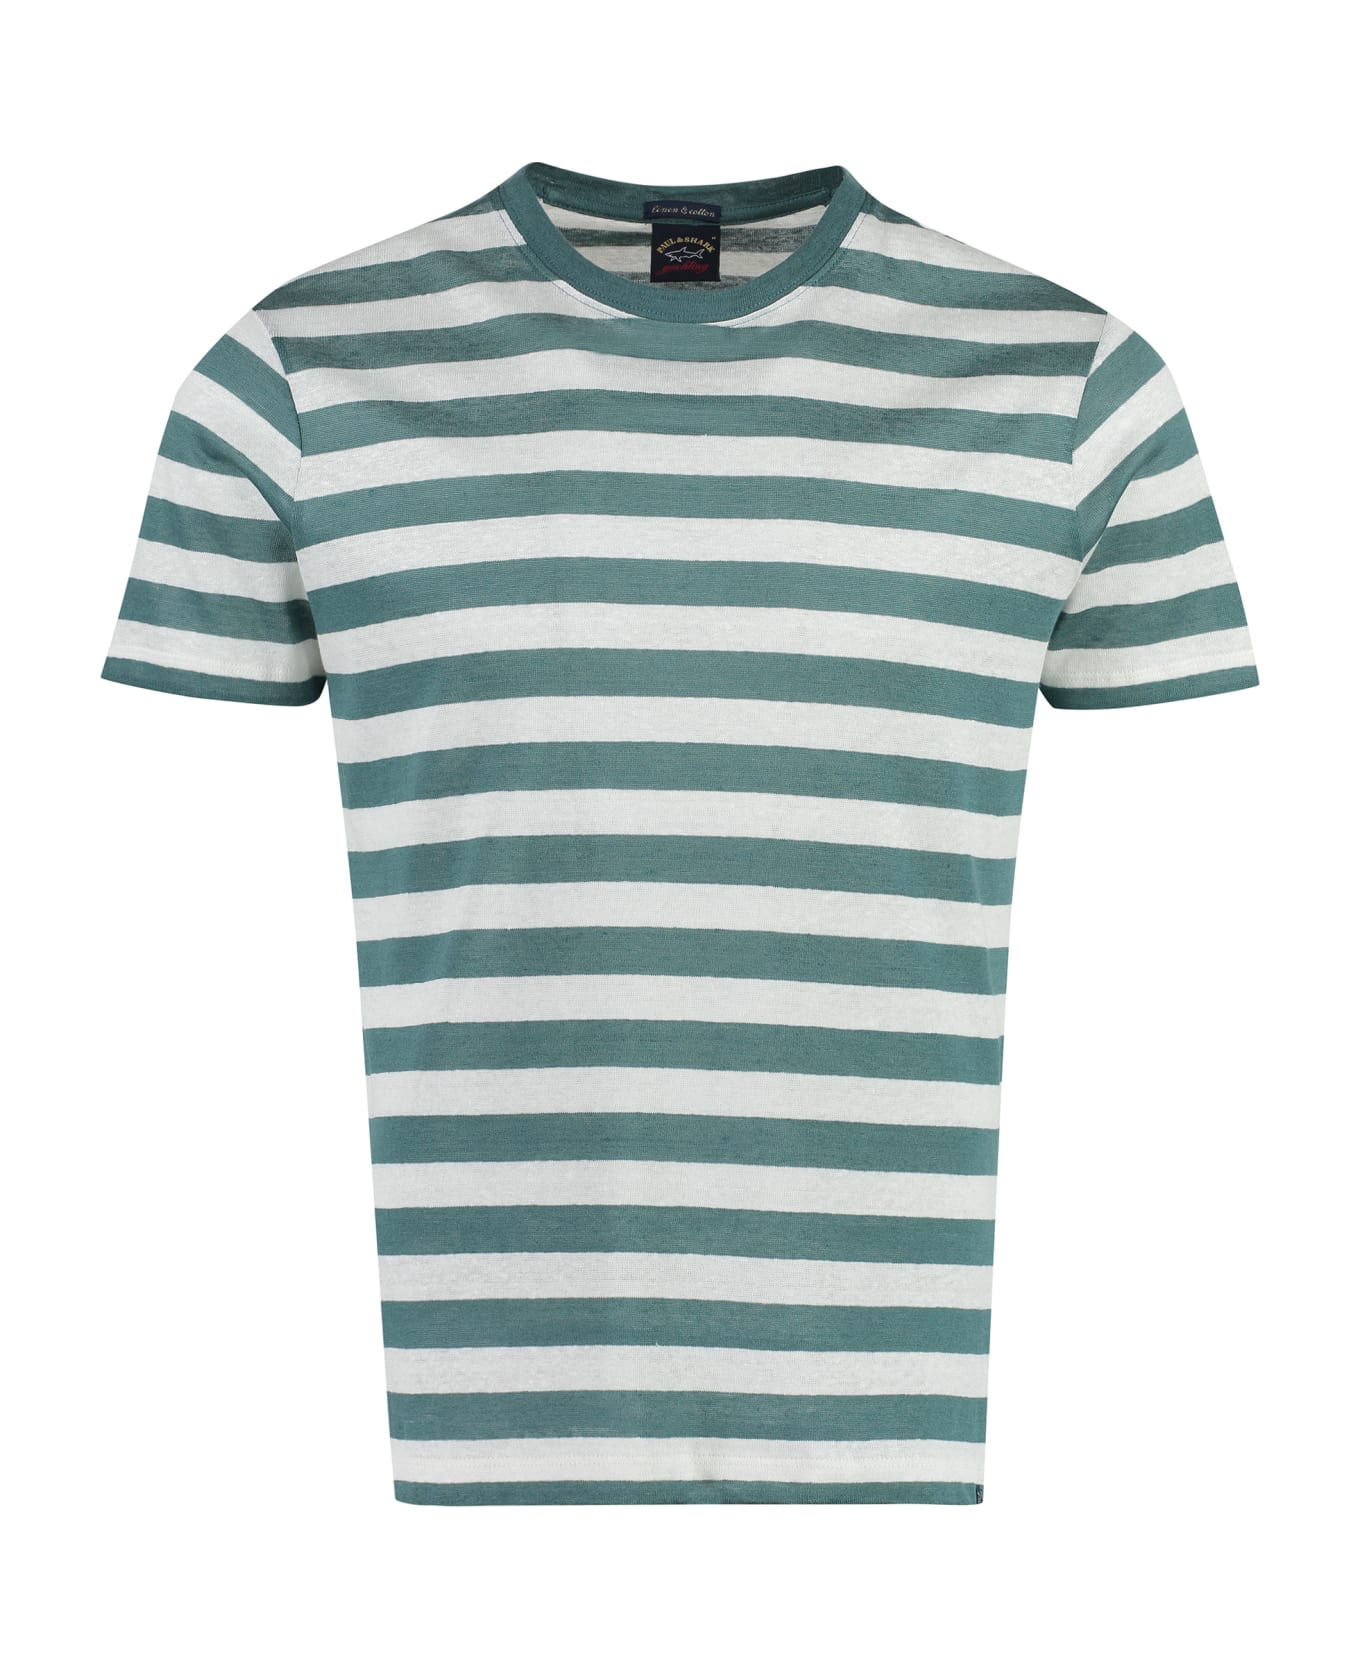 Paul&Shark Striped Linen-cotton Blend T-shirt - green